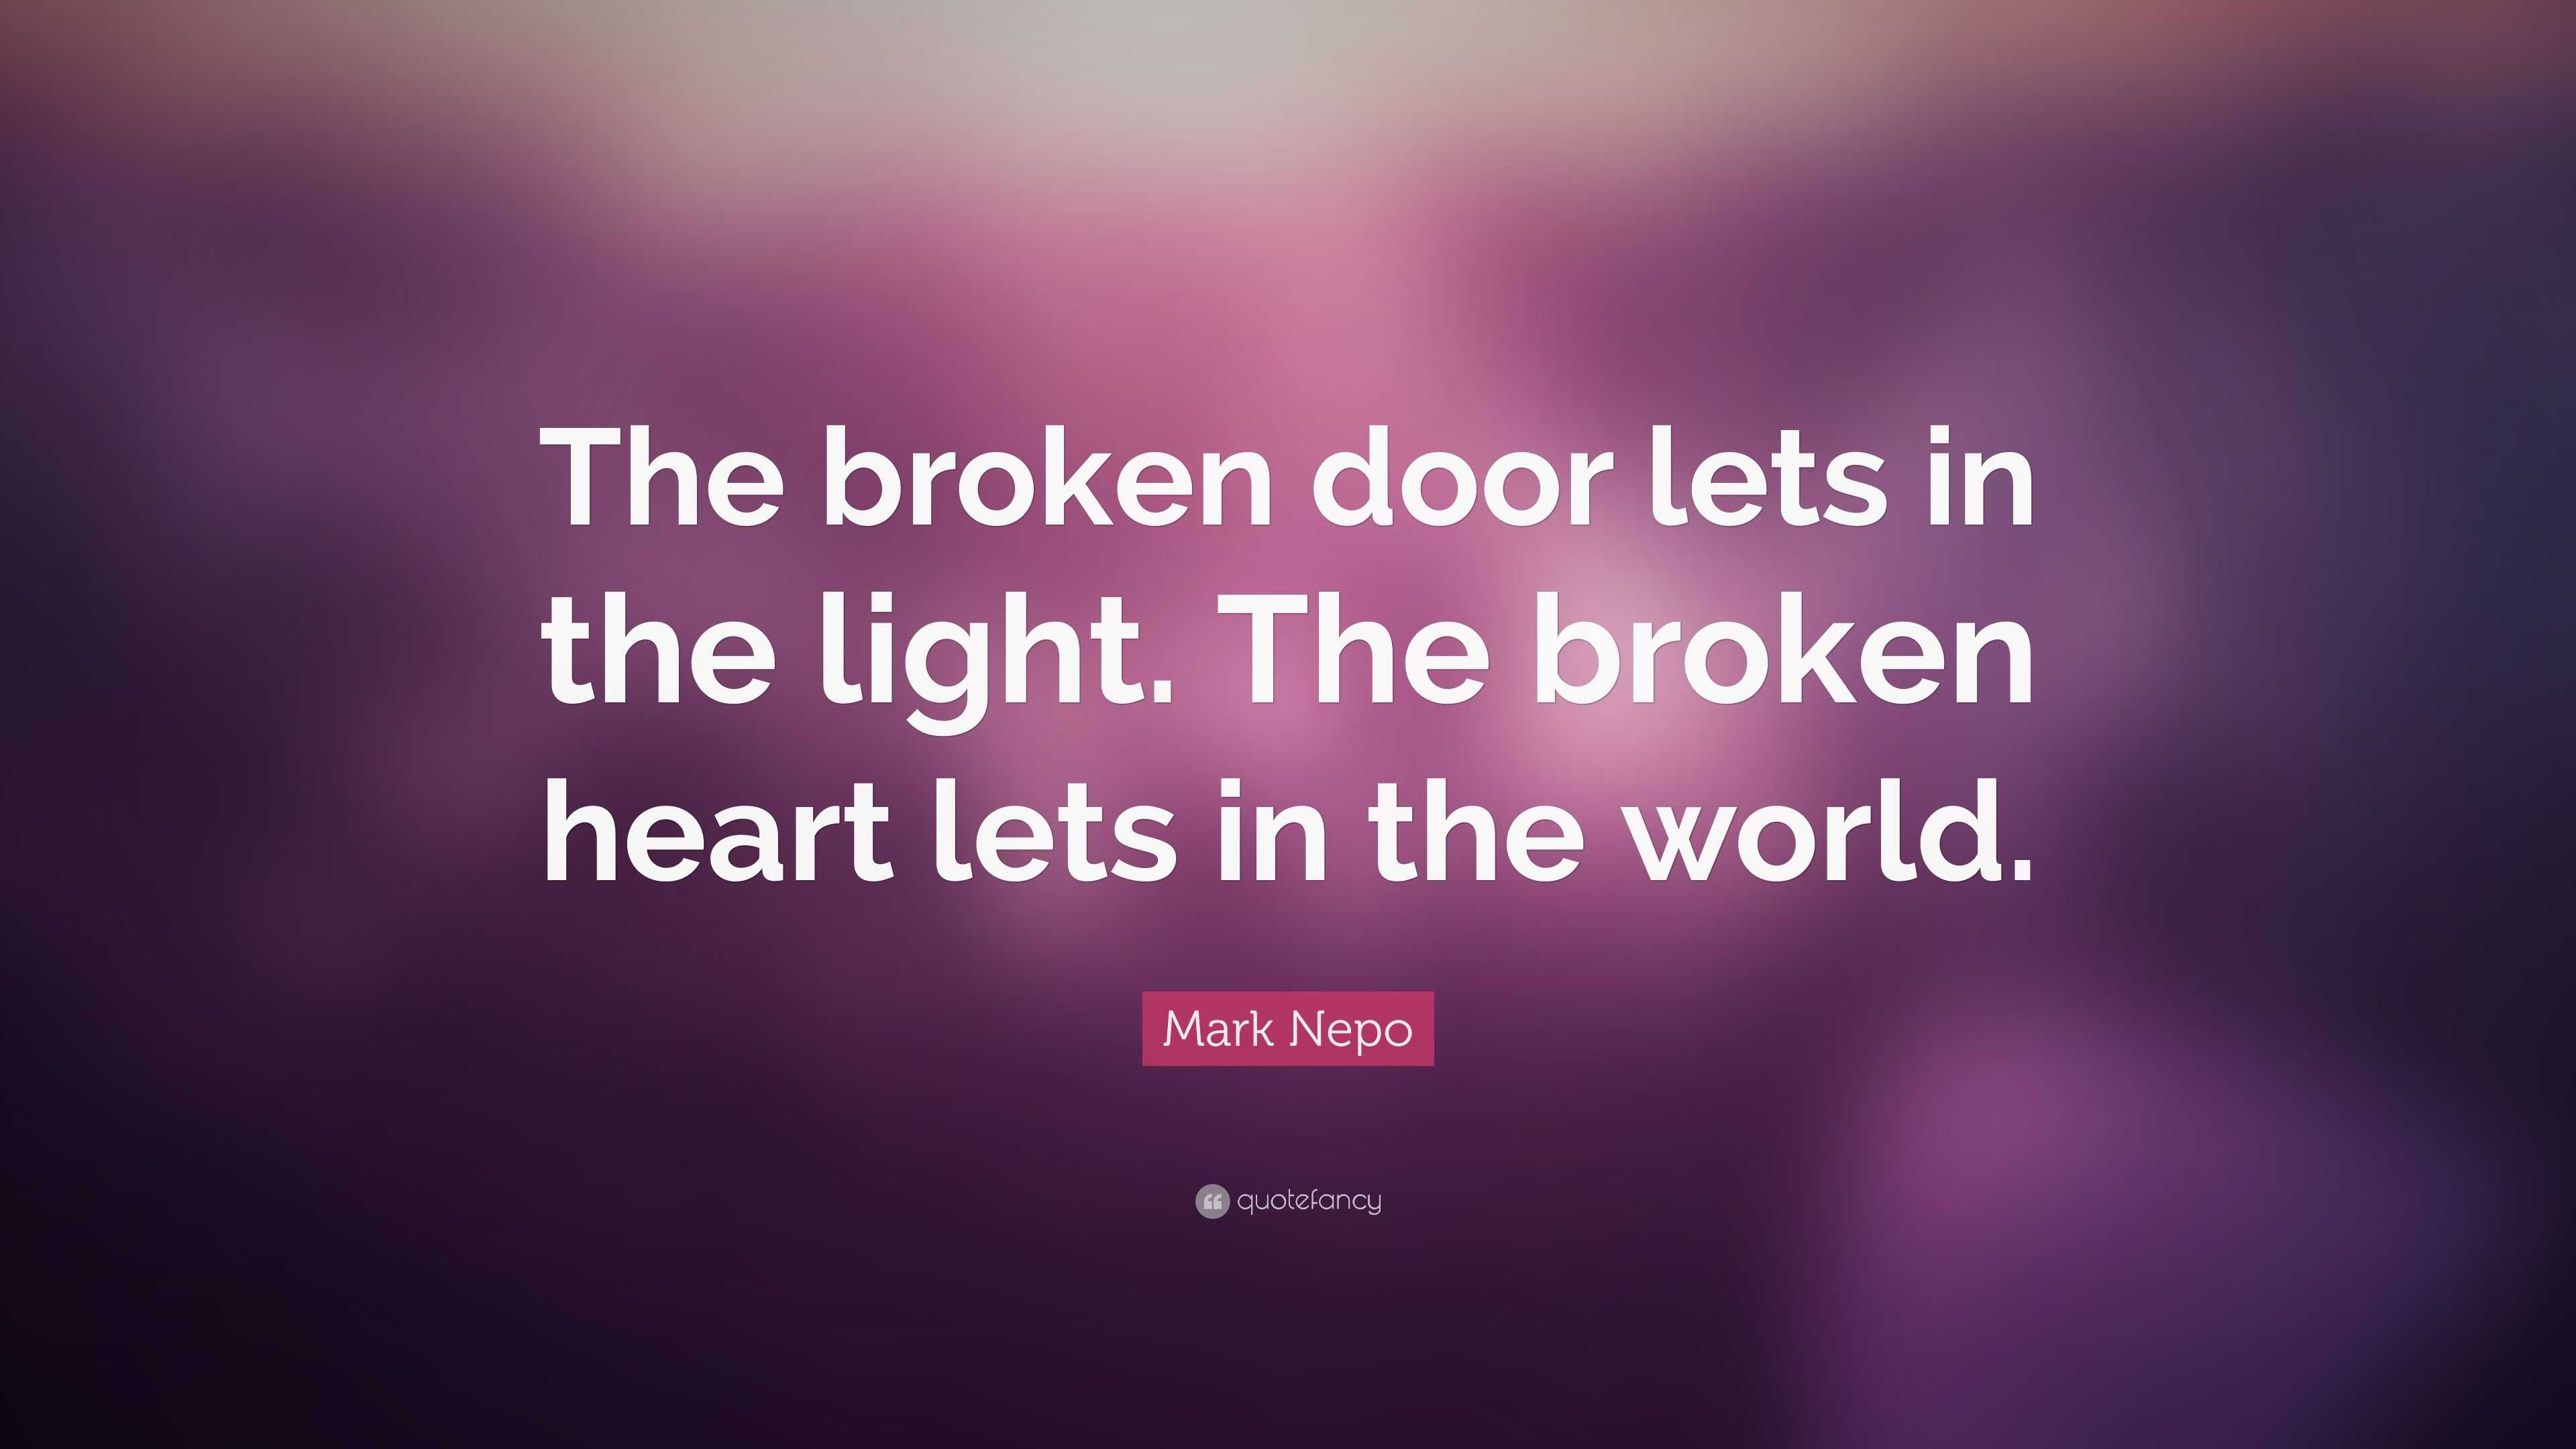 Mark Nepo Quote: “The broken door lets in the light. The broken heart ...